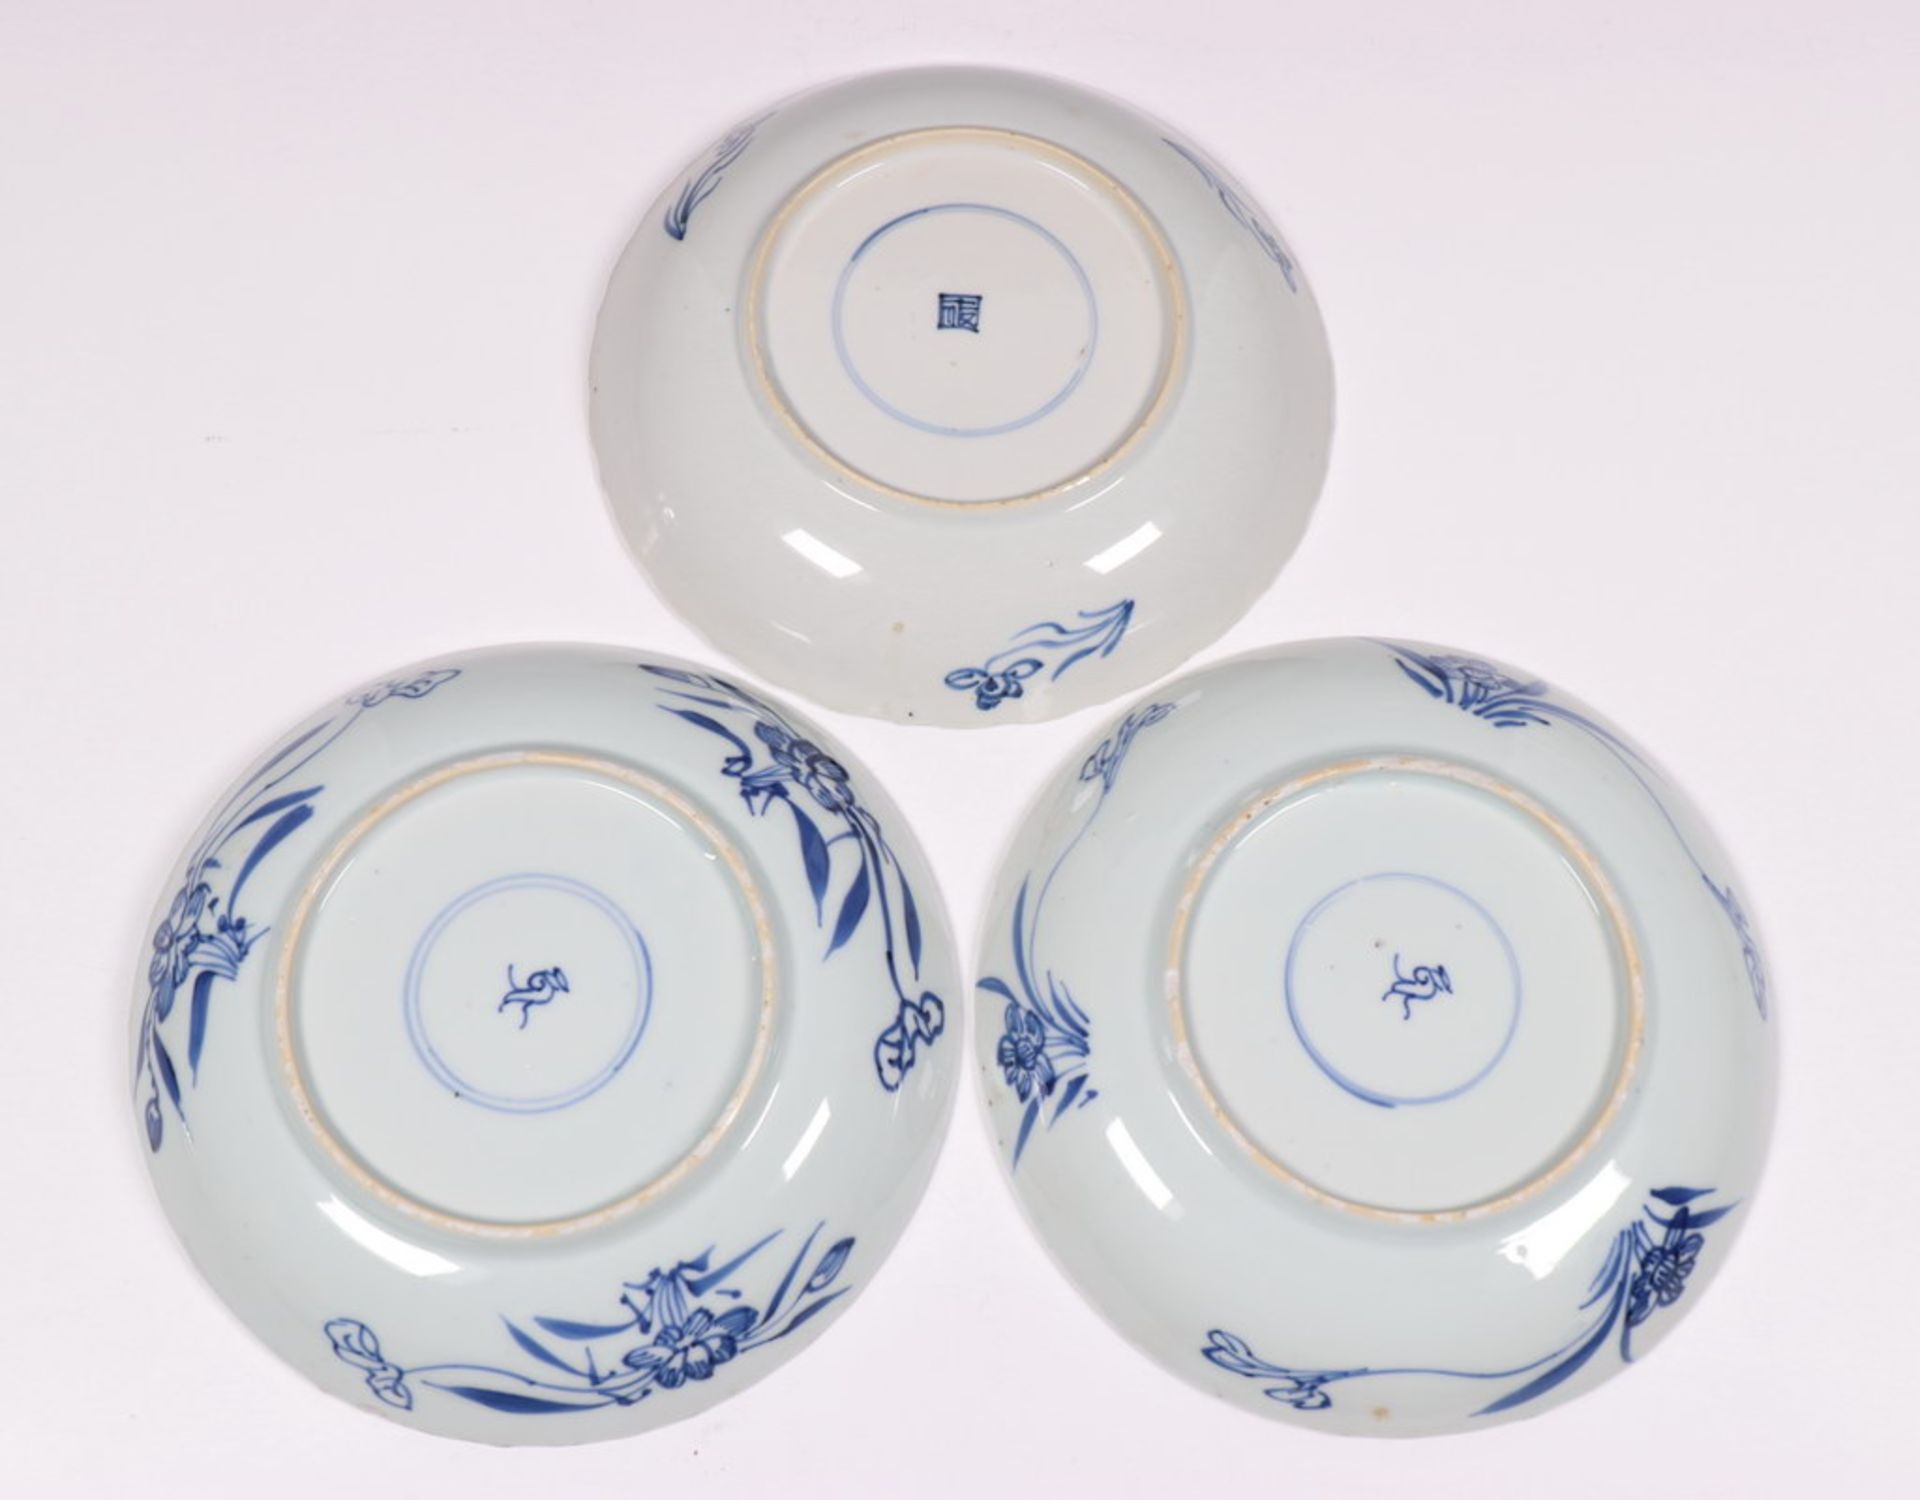 China, blauw-wit porseleinen schotel en drie borden, Kangxi,met decor van zeeegel en asters in - Bild 3 aus 7